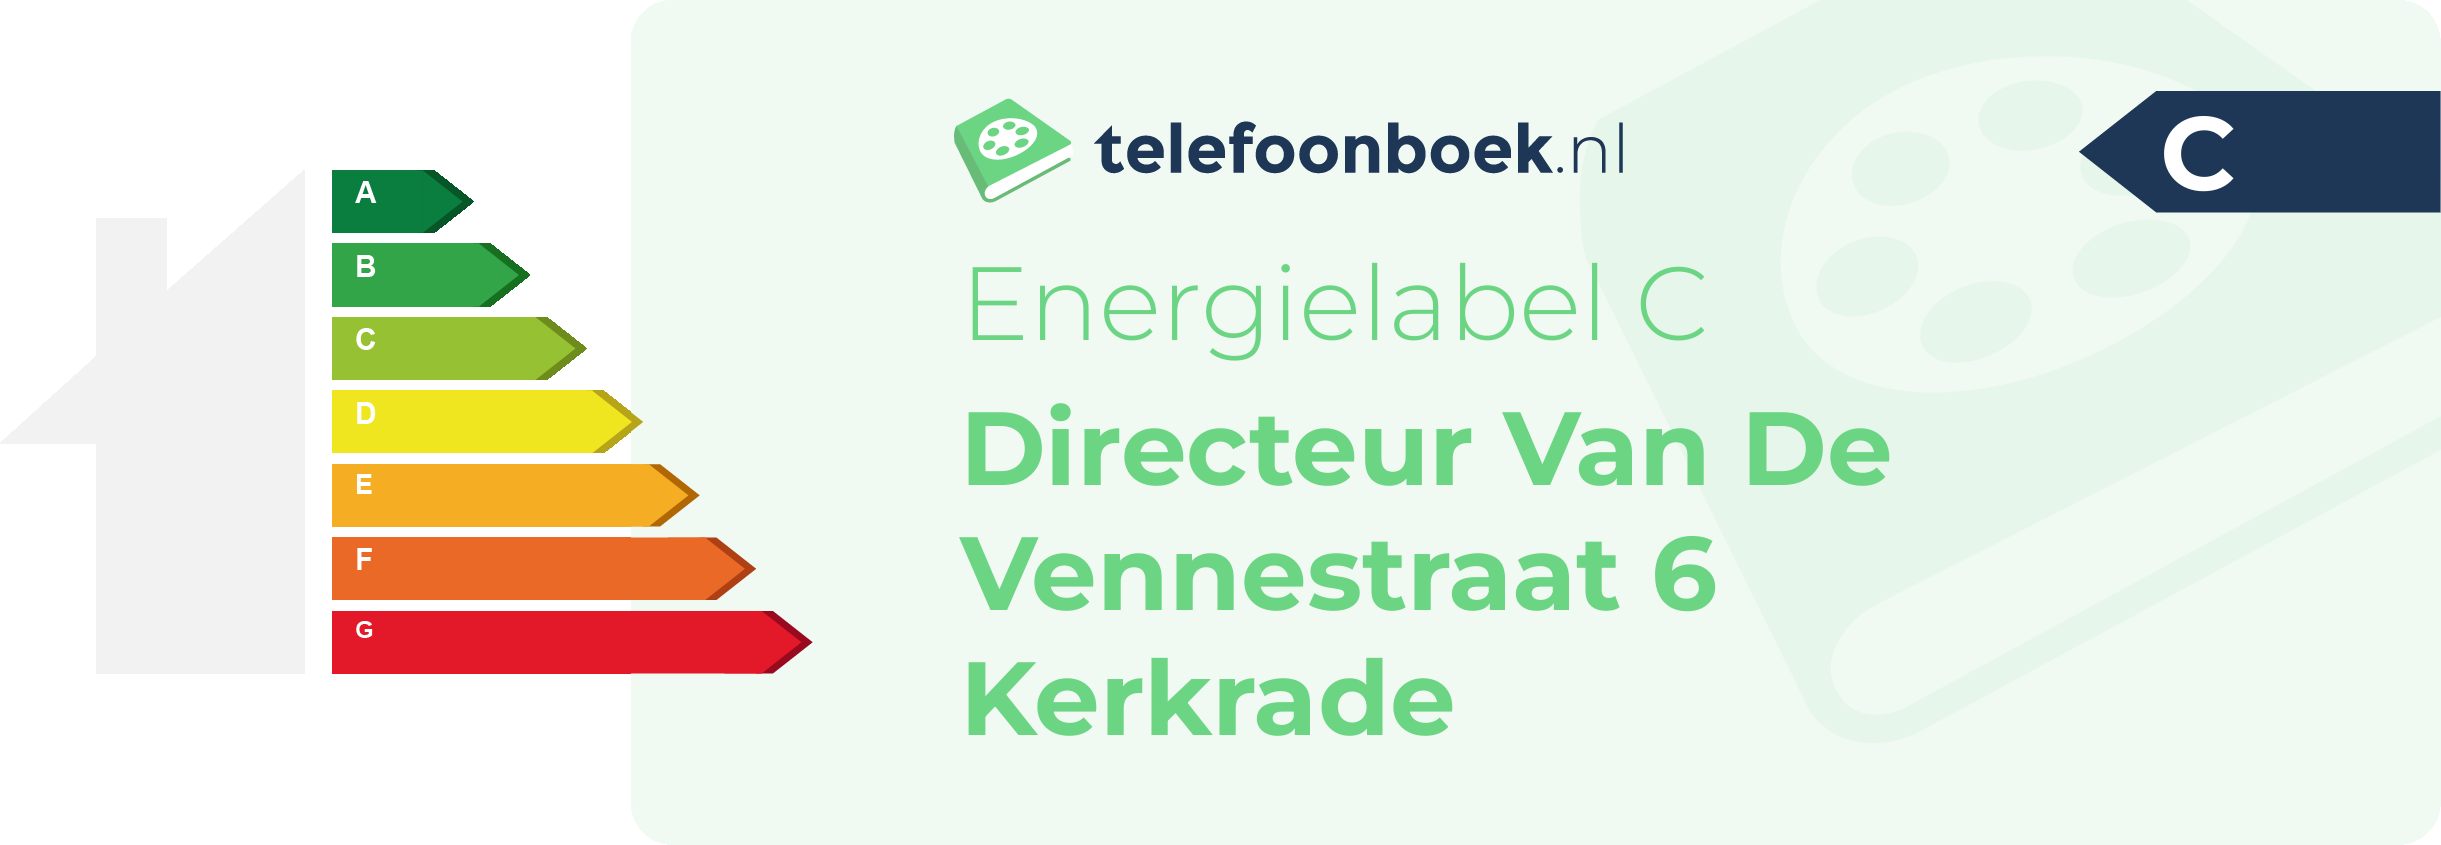 Energielabel Directeur Van De Vennestraat 6 Kerkrade